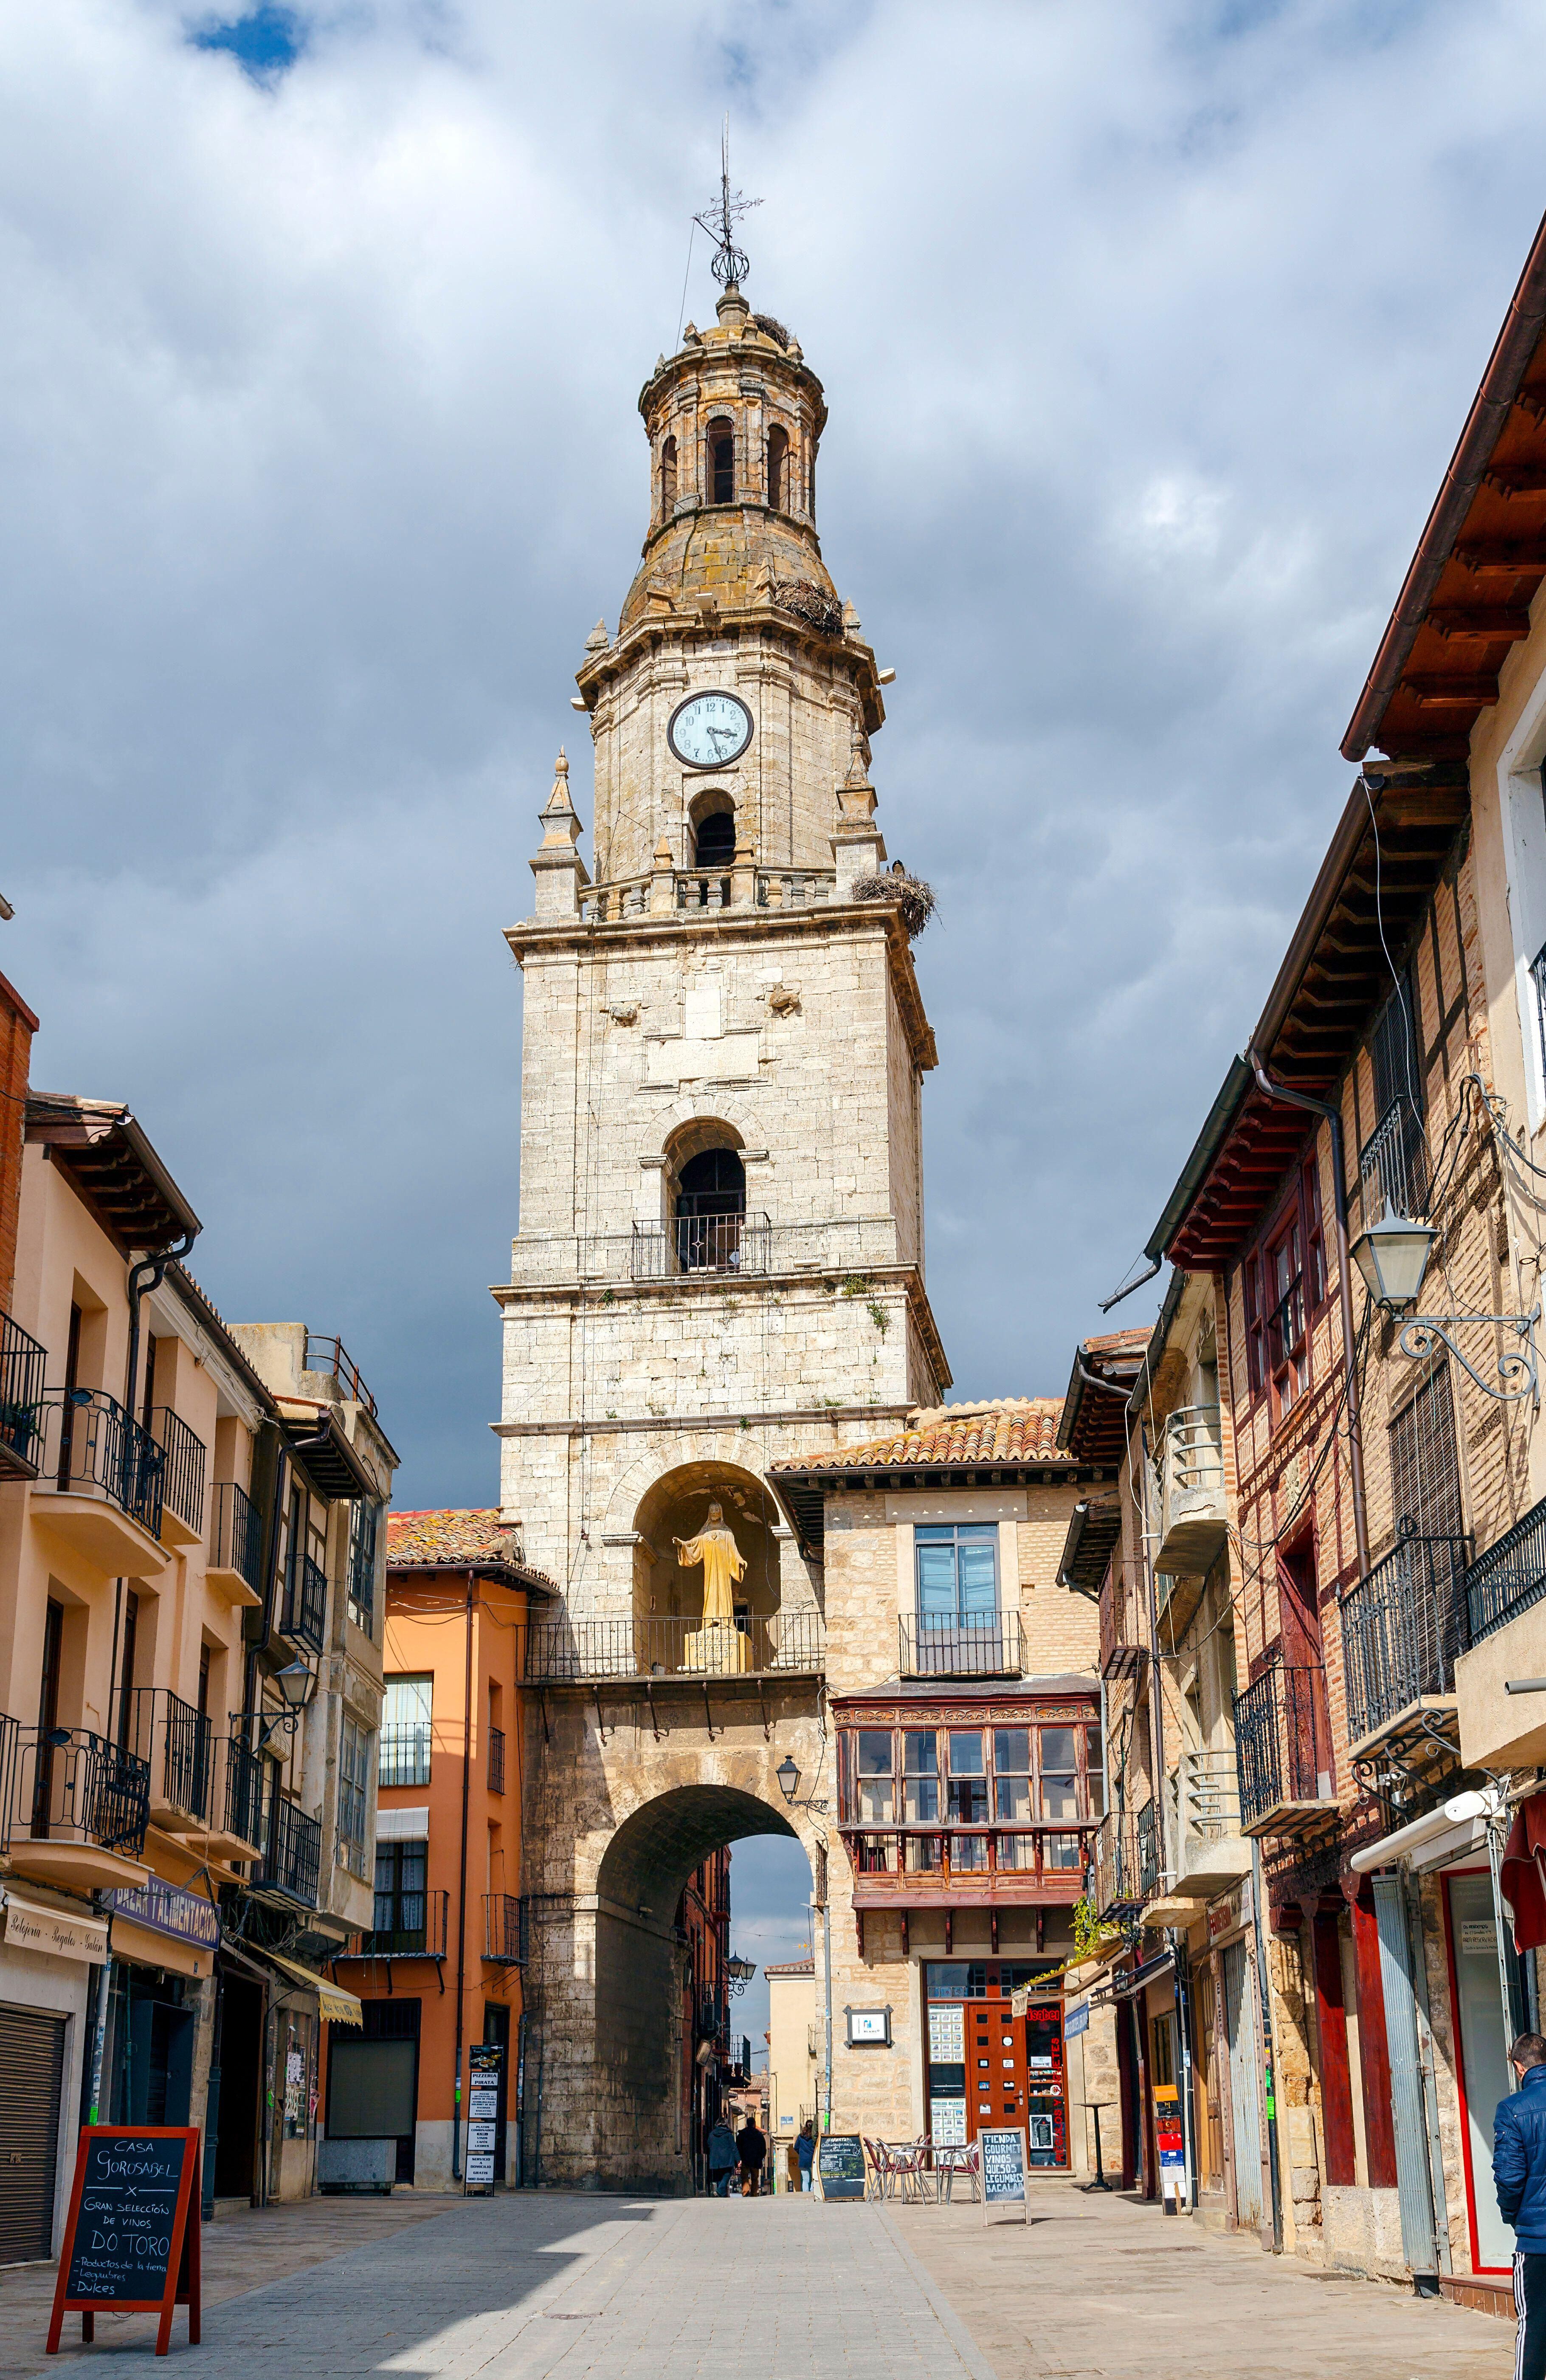 Torre del Reloj, de unos 20 metros de altura, construida en 1738 por el arquitecto Valentín Antonio de Mazarrasa y Torres sobre el arco de entrada al conjunto monumental de la ciudad.